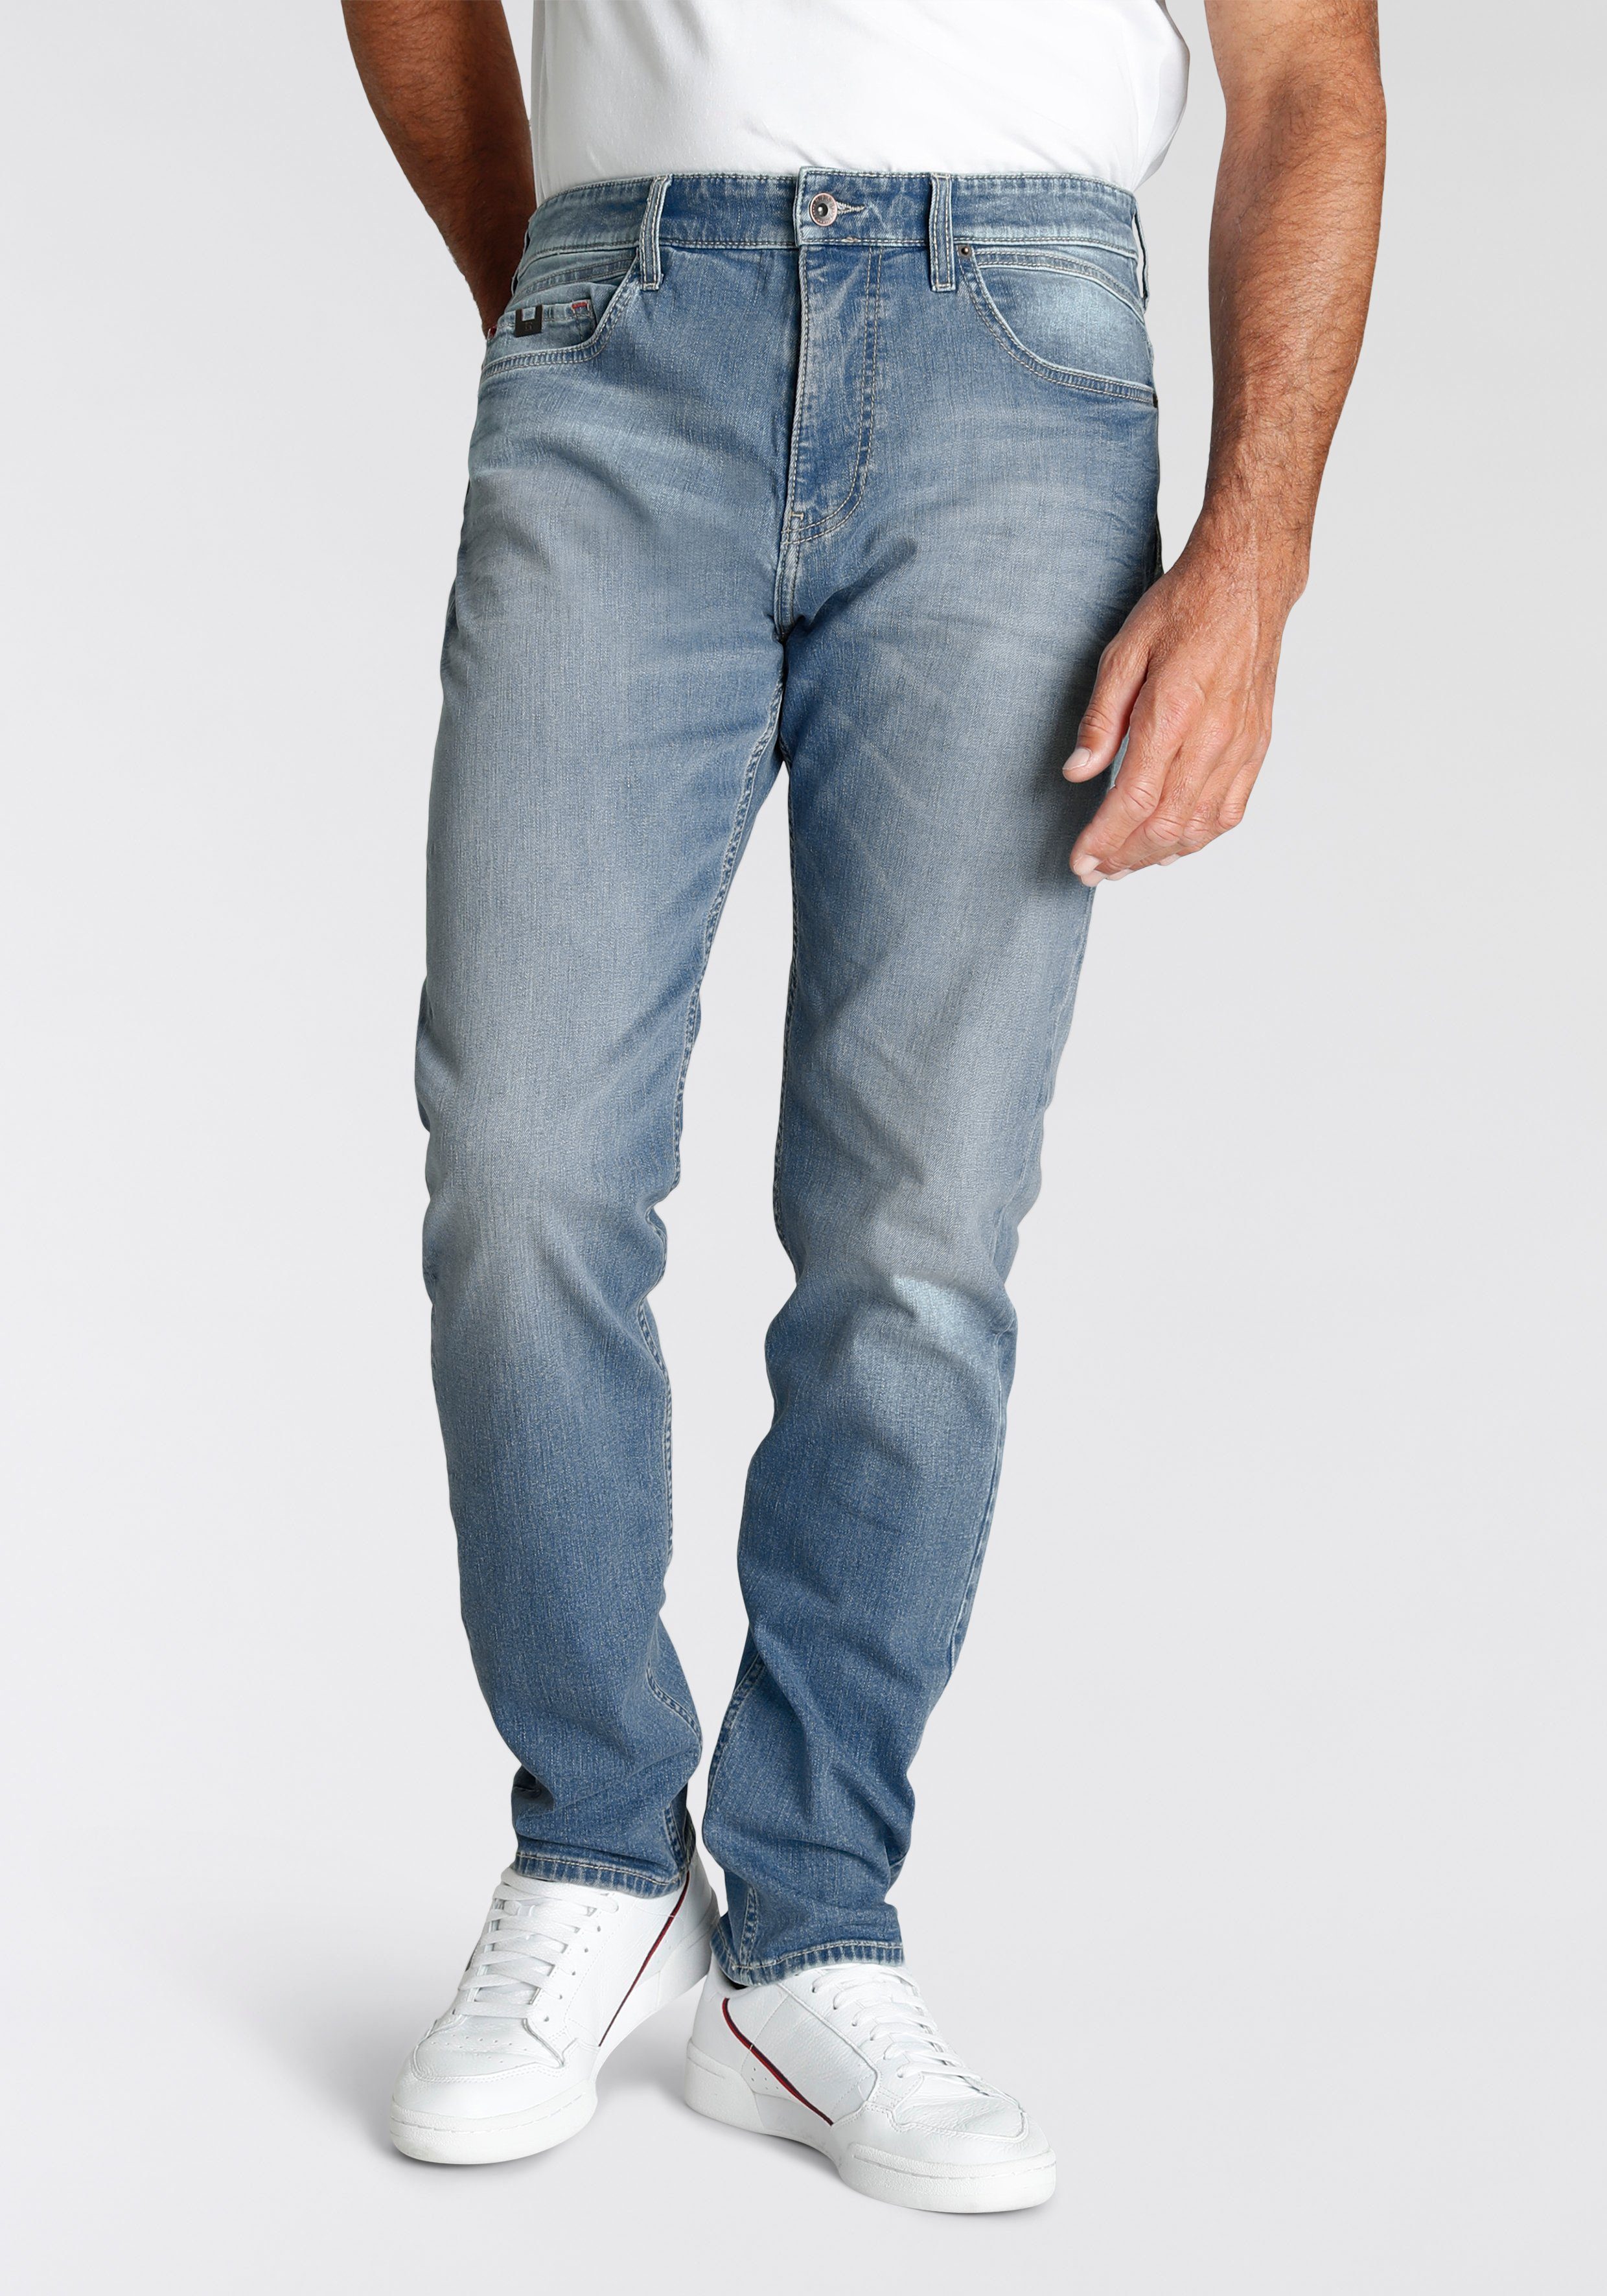 H.I.S Tapered jeans Cian Ecologische, waterbesparende productie door ozon wash